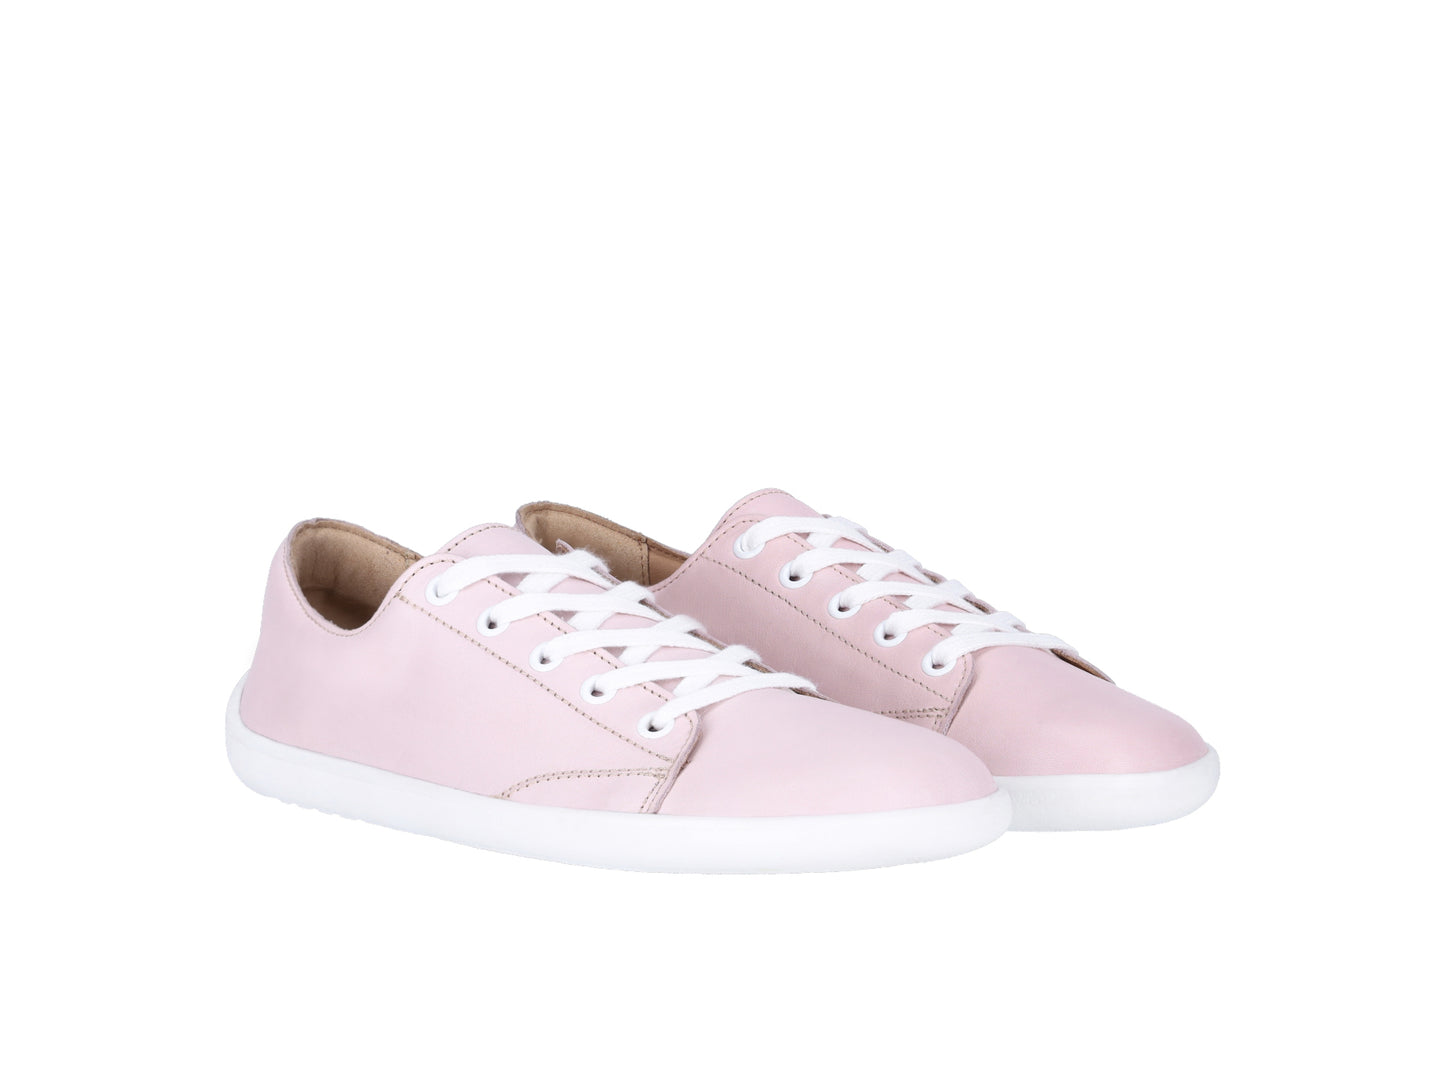 Be Lenka Prime 2.0 Barefoot Sneakers - Light Pink